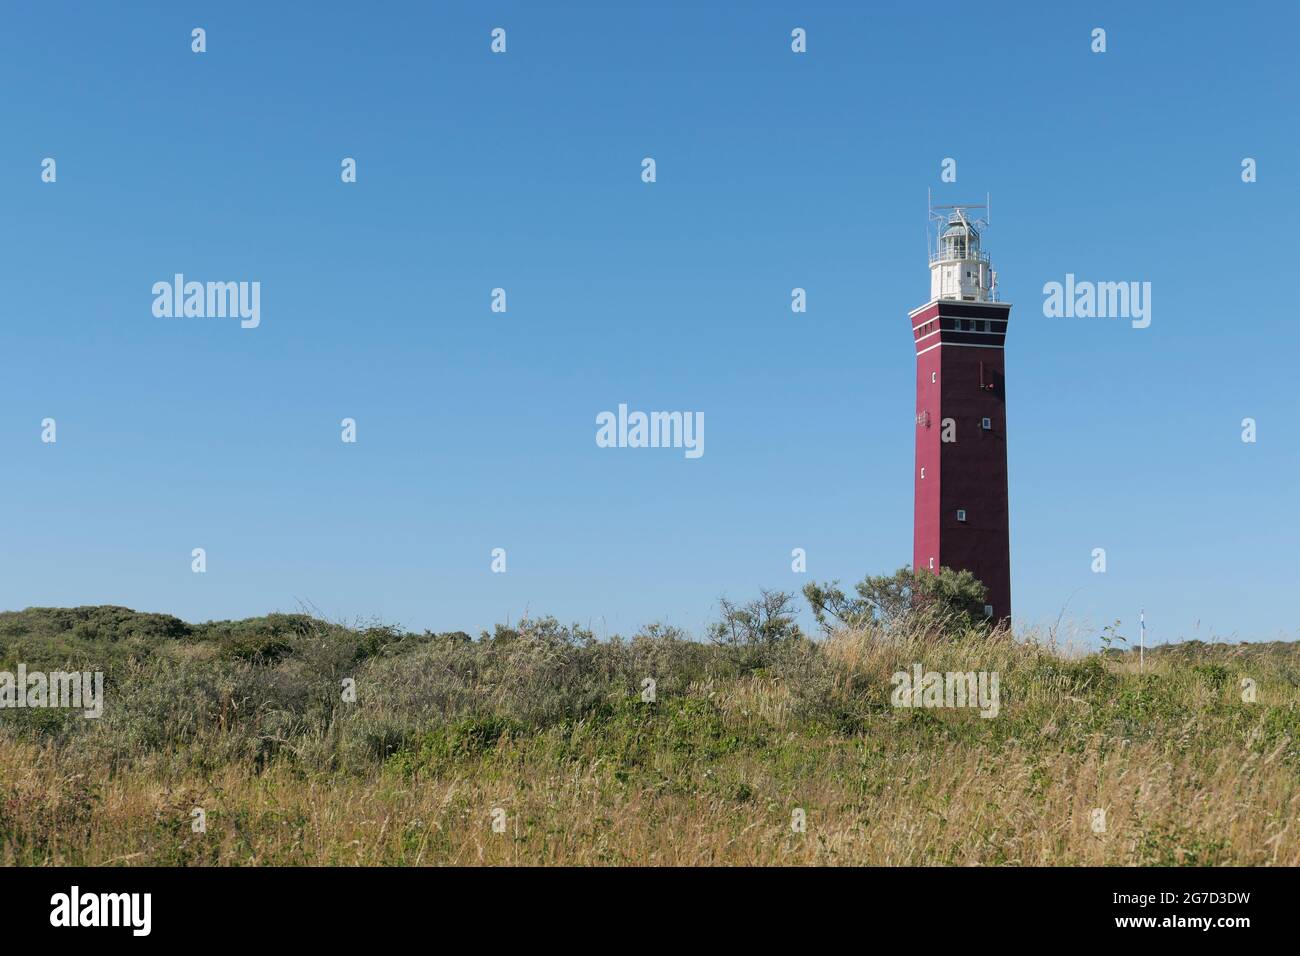 Der Westhoofd (West Head) Leuchtturm in der Nähe von Ouddorp, Niederlande, liegt in einer Sanddünenlandschaft, gesehen gegen einen klaren blauen Himmel. Stockfoto